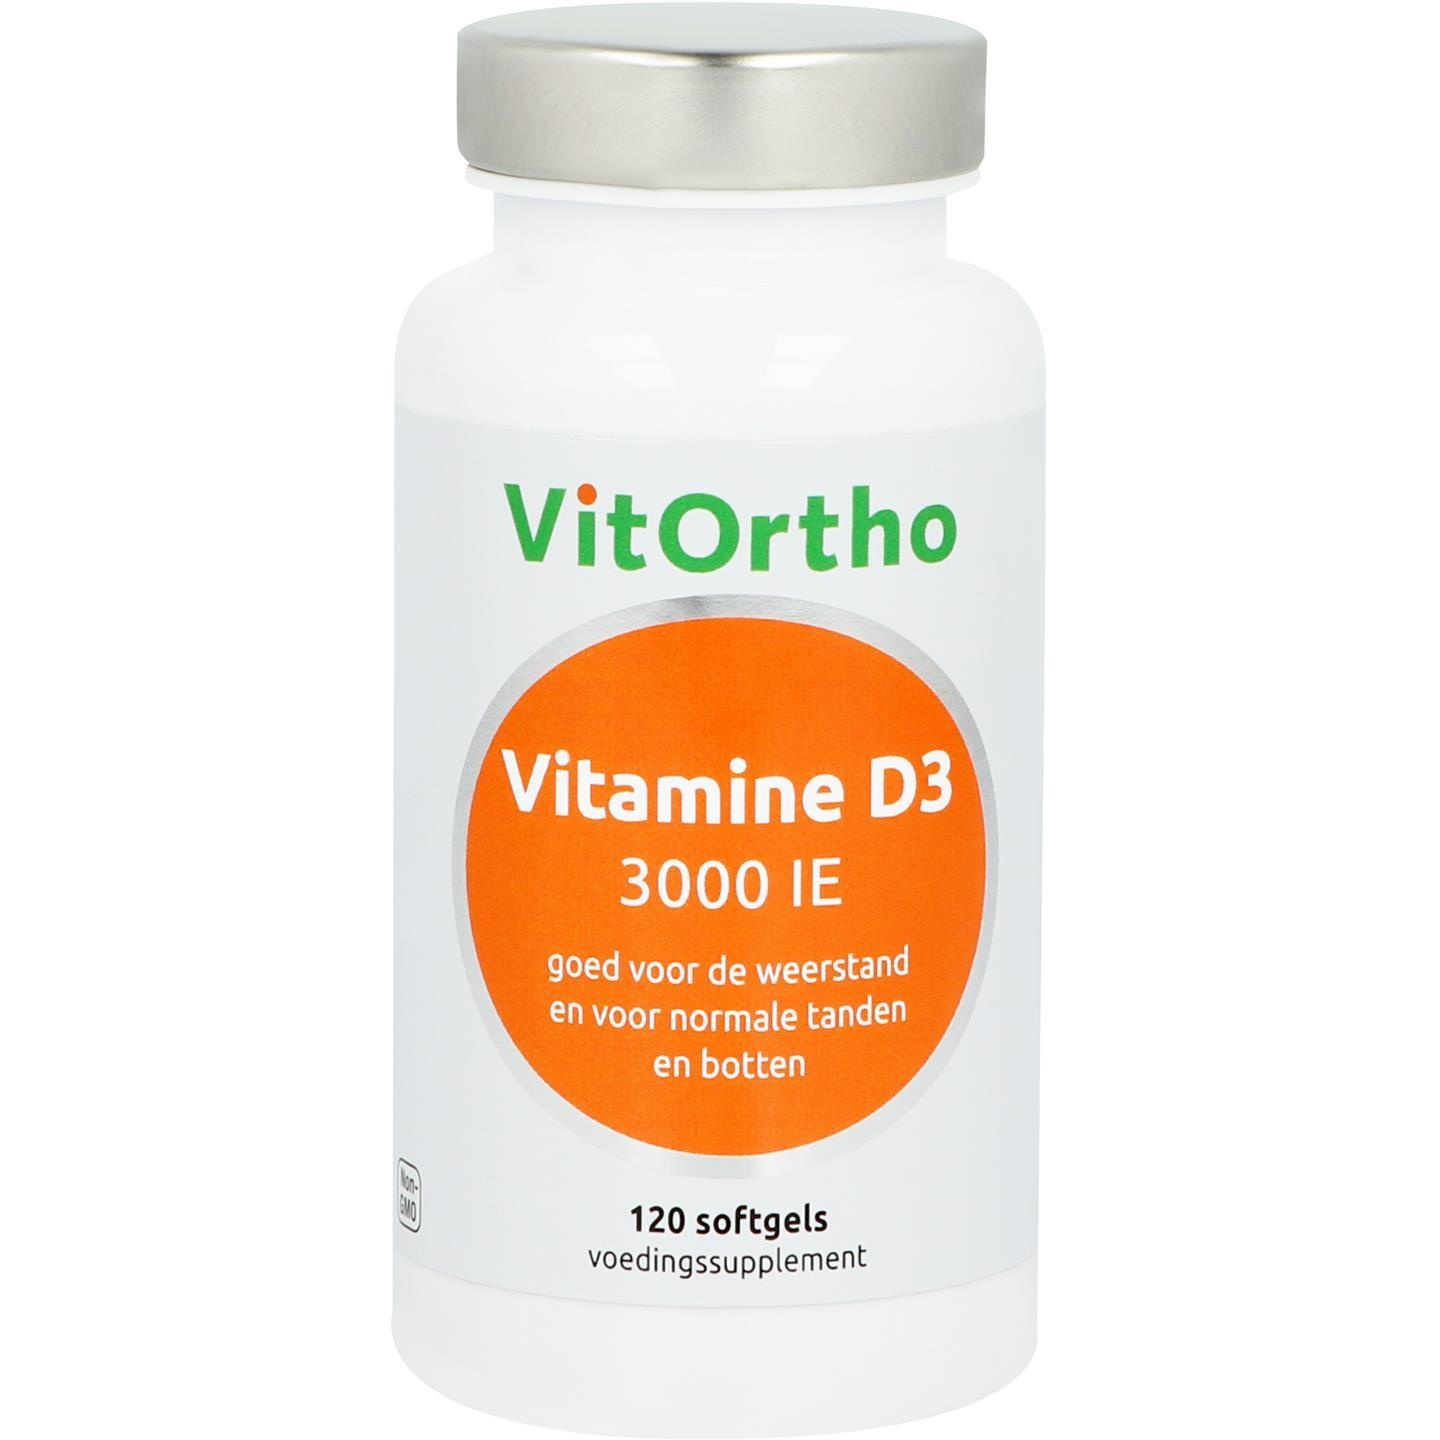 Vitortho VitOrtho Vitamin D3 3000IE (120 Soft Kaps)